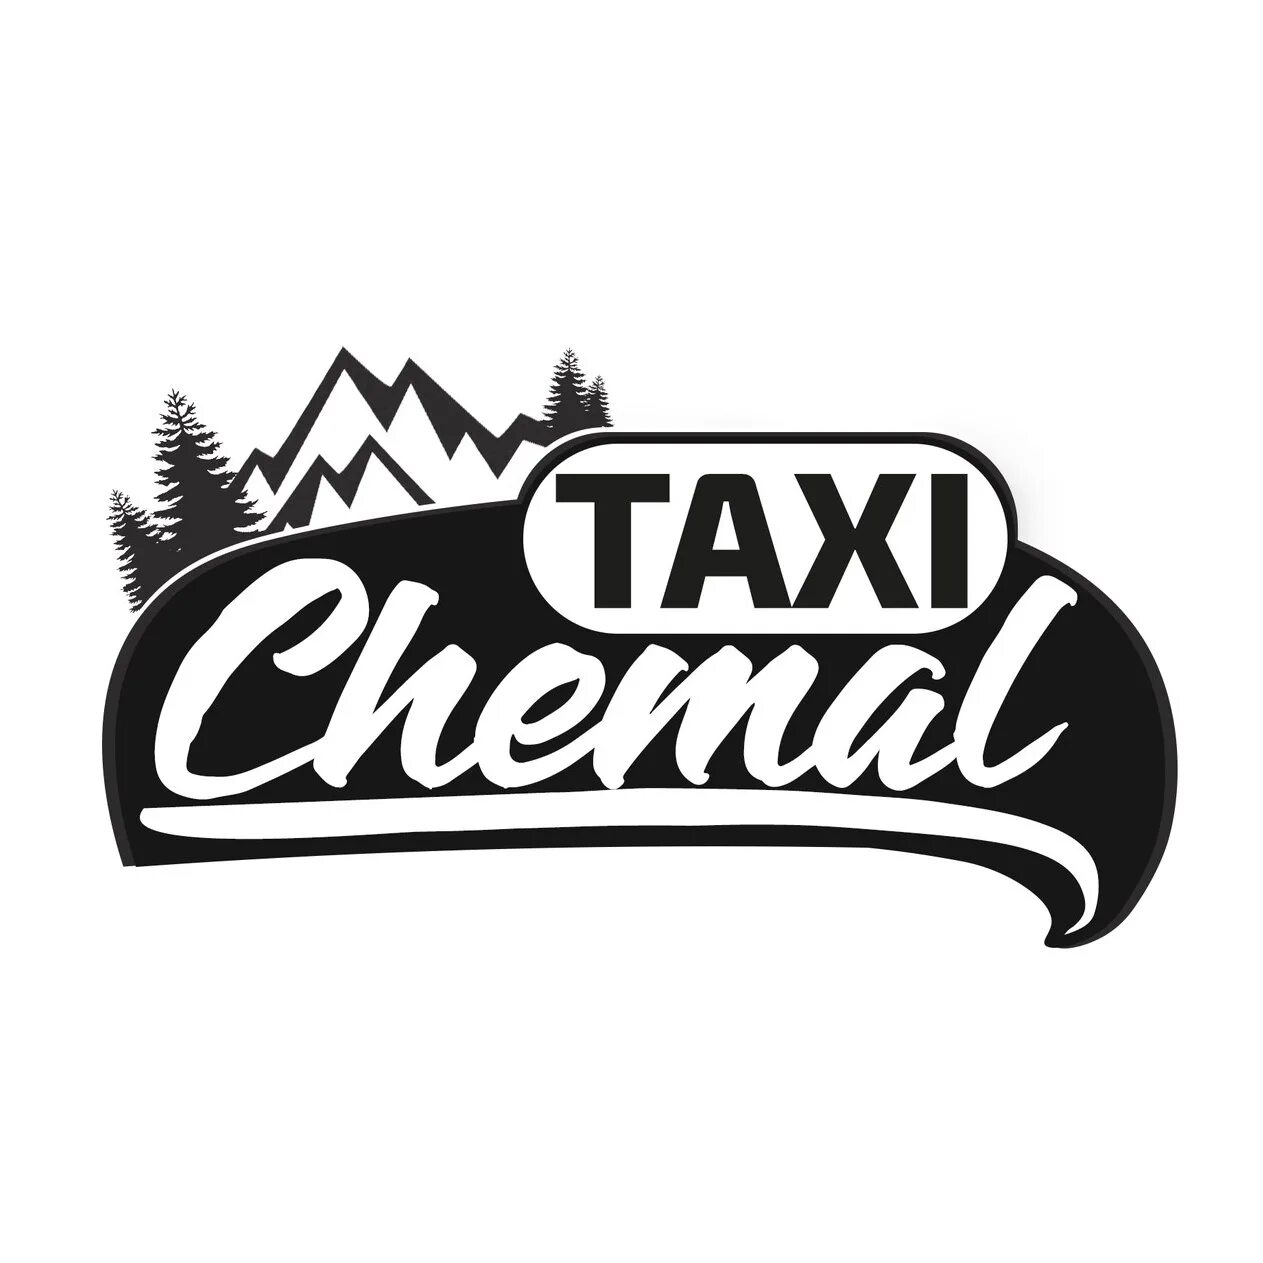 Такси чемал. Такси в Чемале. Чемал отель эмблема.